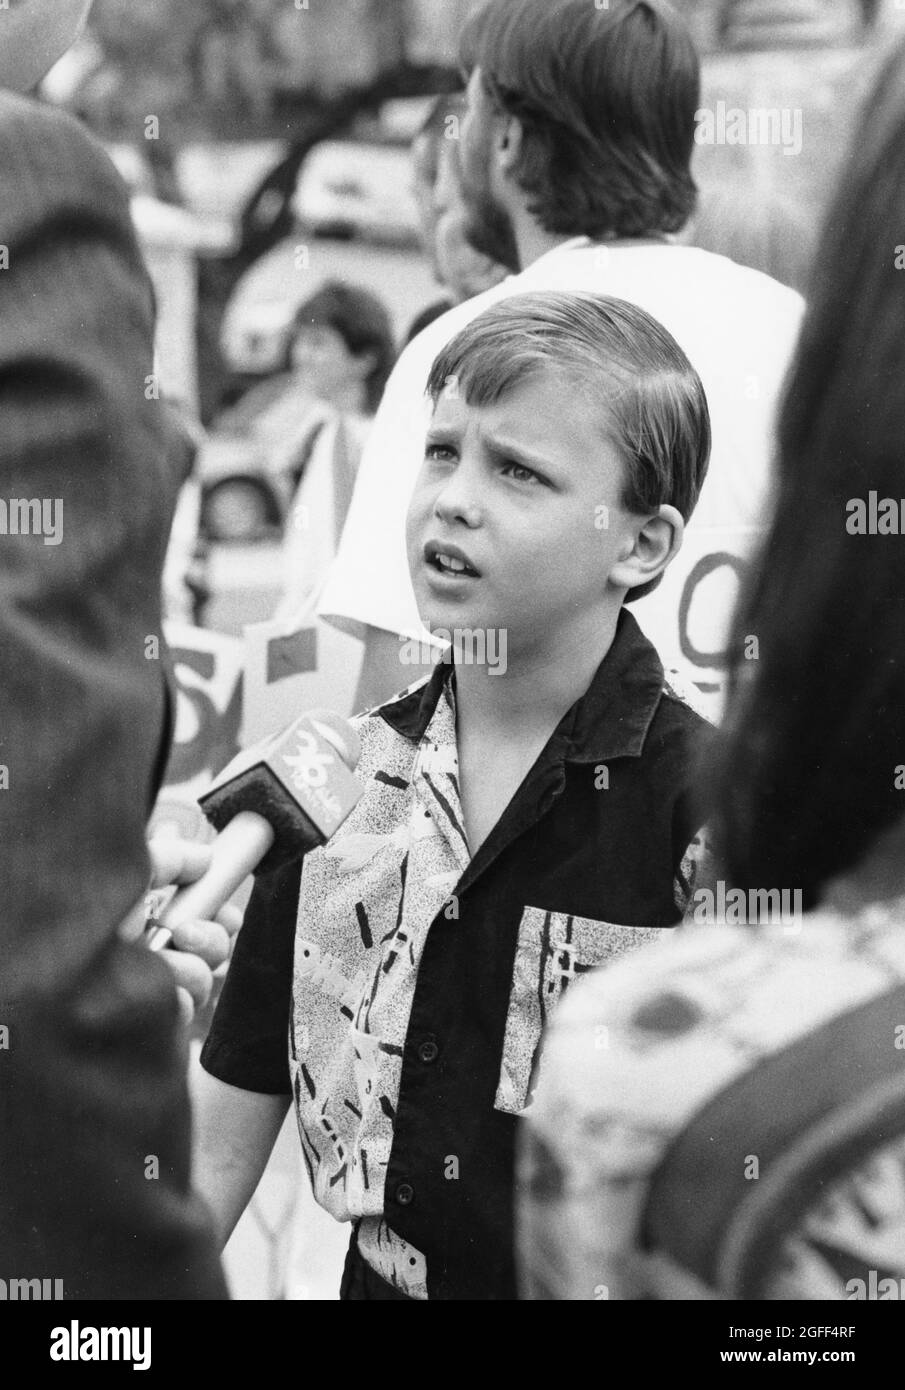 Austin Texas USA, circa 1994: TV reporter interviews young boy  about a  policy regarding hair length in school. ©Bob Daemmrich Stock Photo